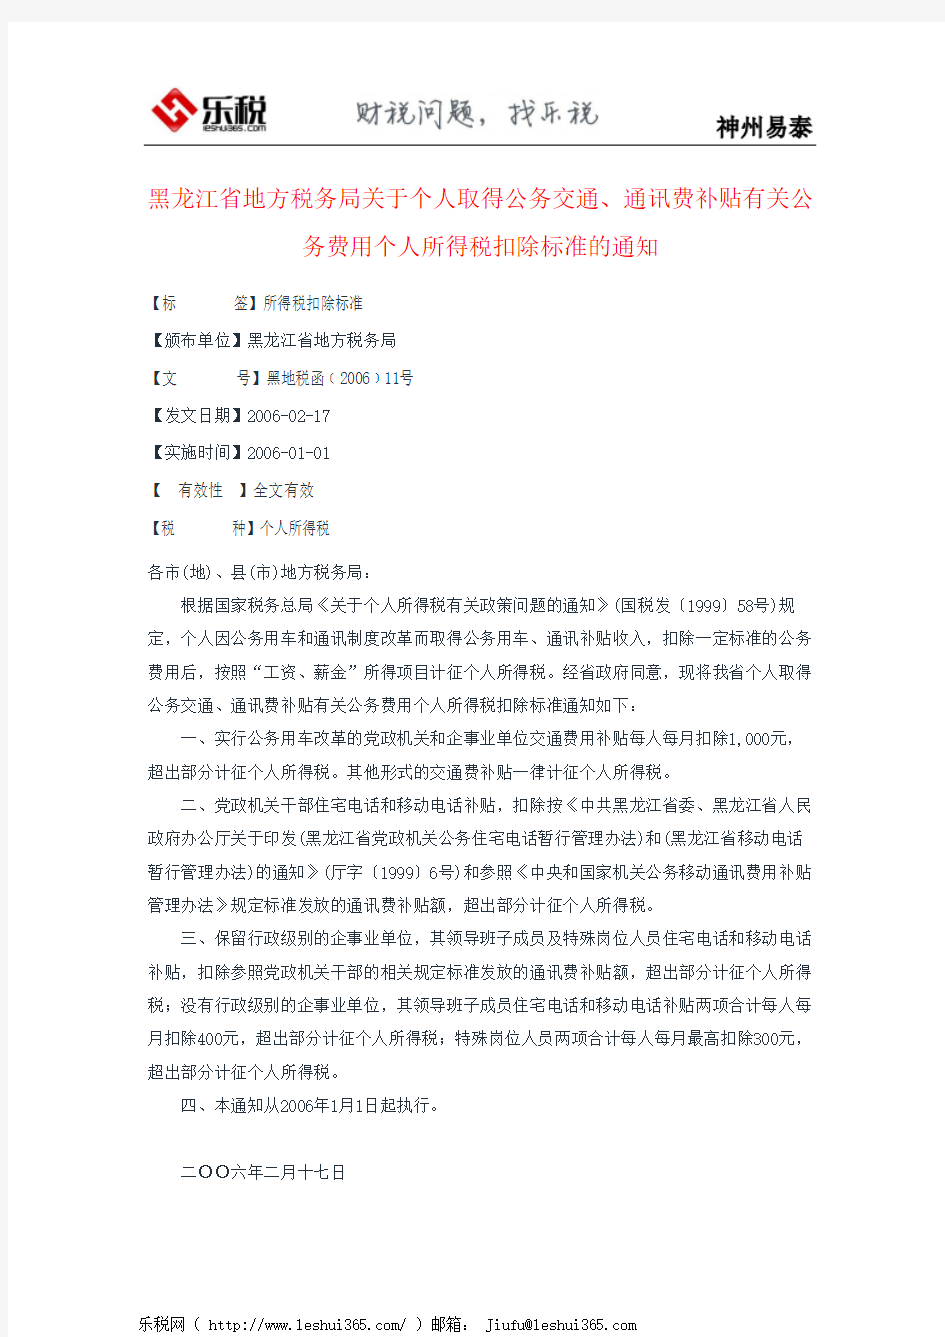 黑龙江省地方税务局关于个人取得公务交通、通讯费补贴有关公务费